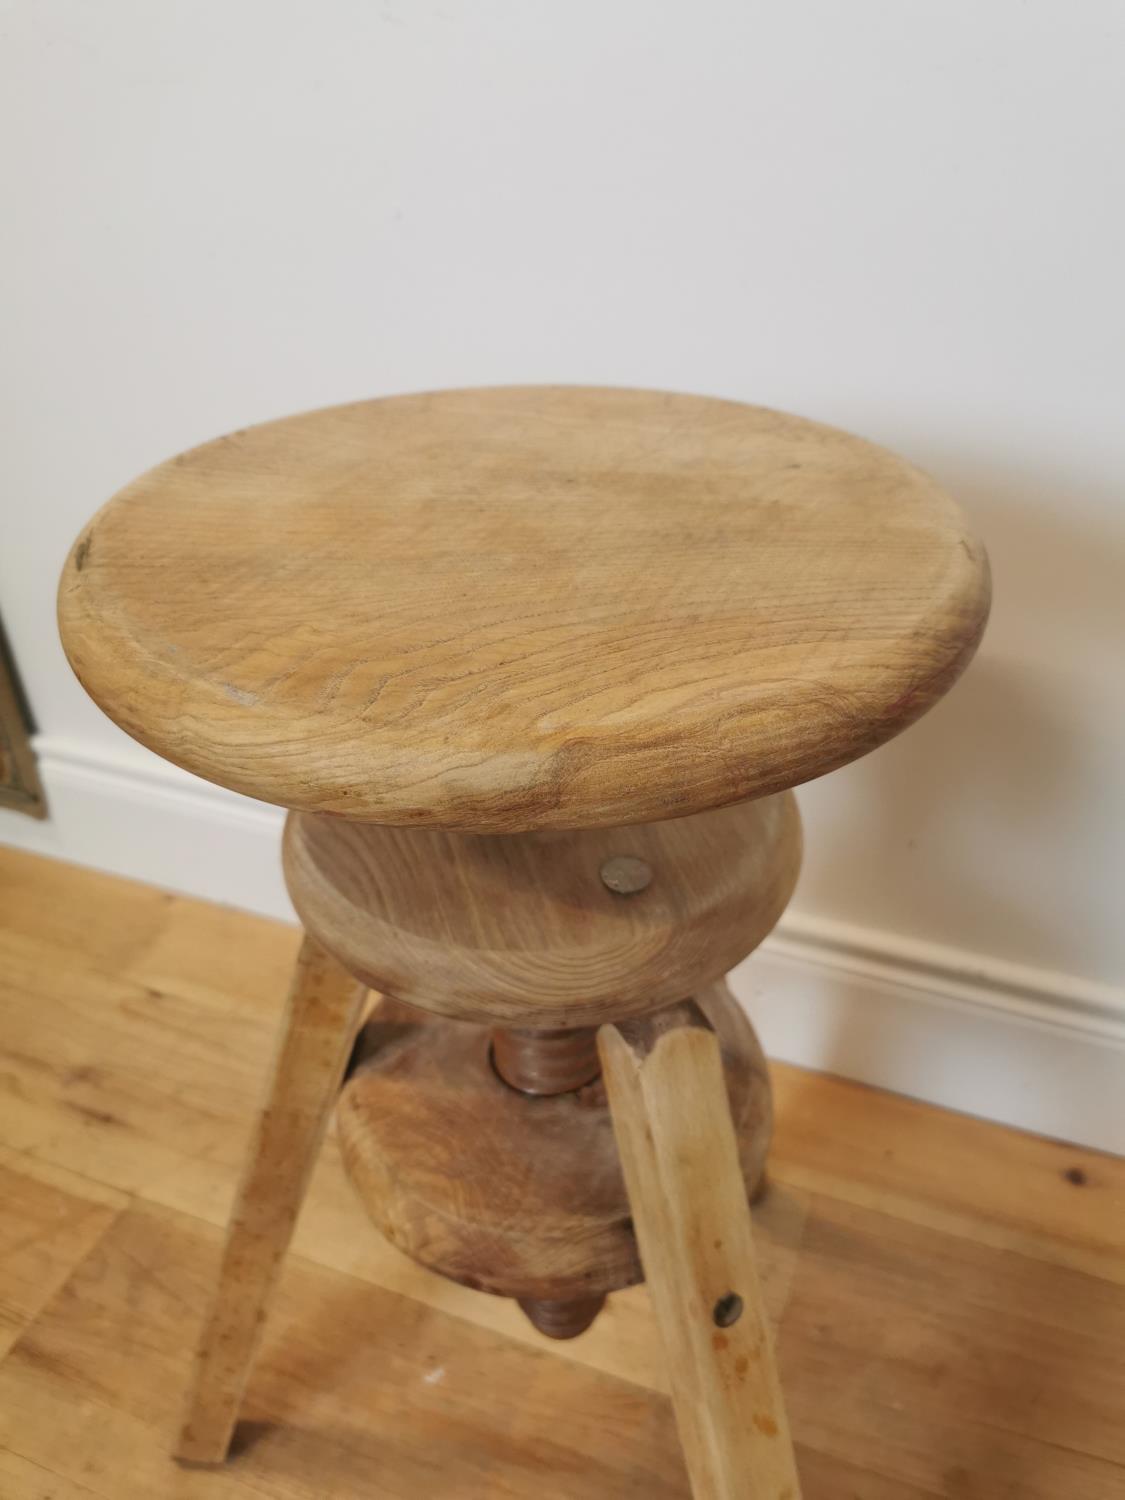 Pine revolving artist's stool - Image 3 of 3